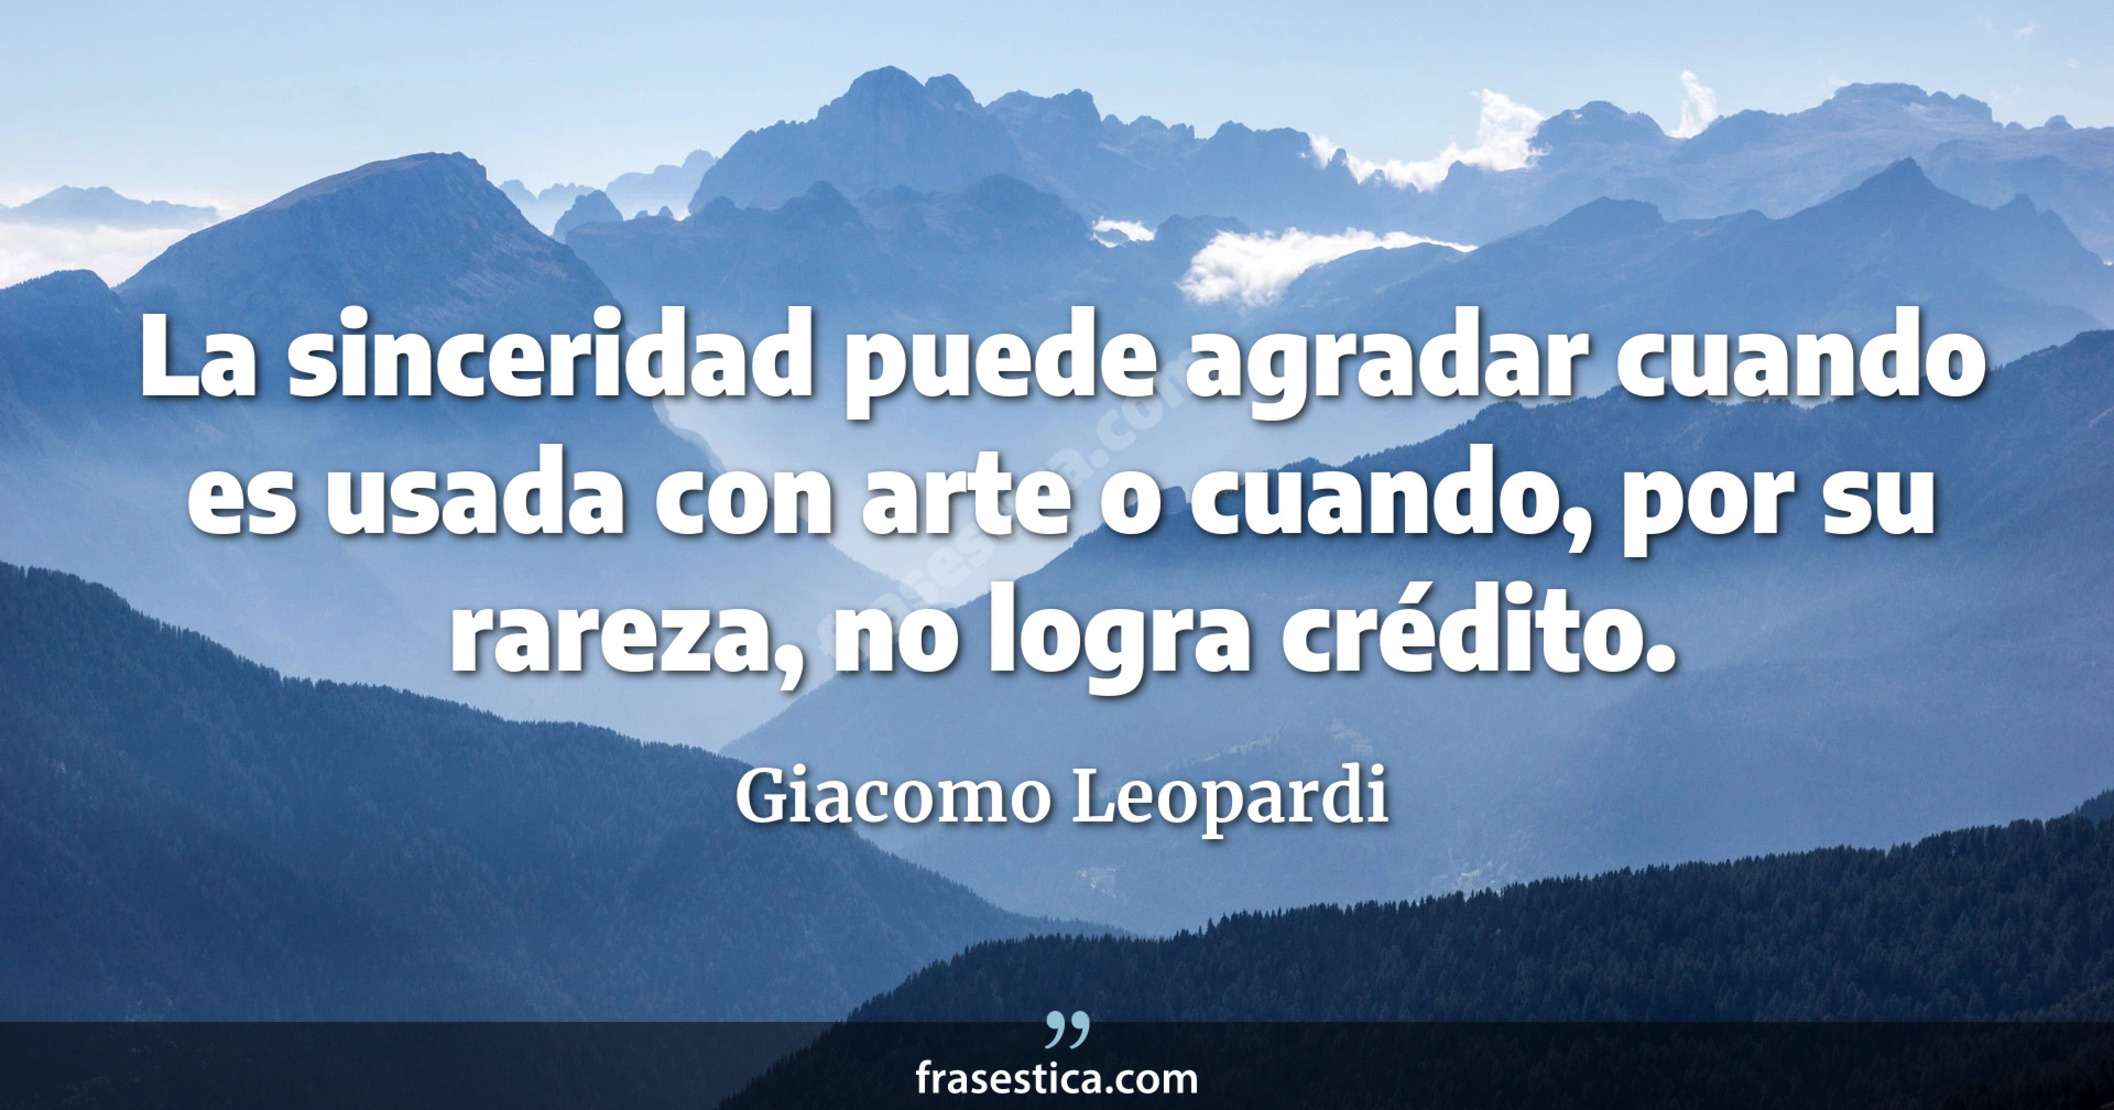 La sinceridad puede agradar cuando es usada con arte o cuando, por su rareza, no logra crédito. - Giacomo Leopardi